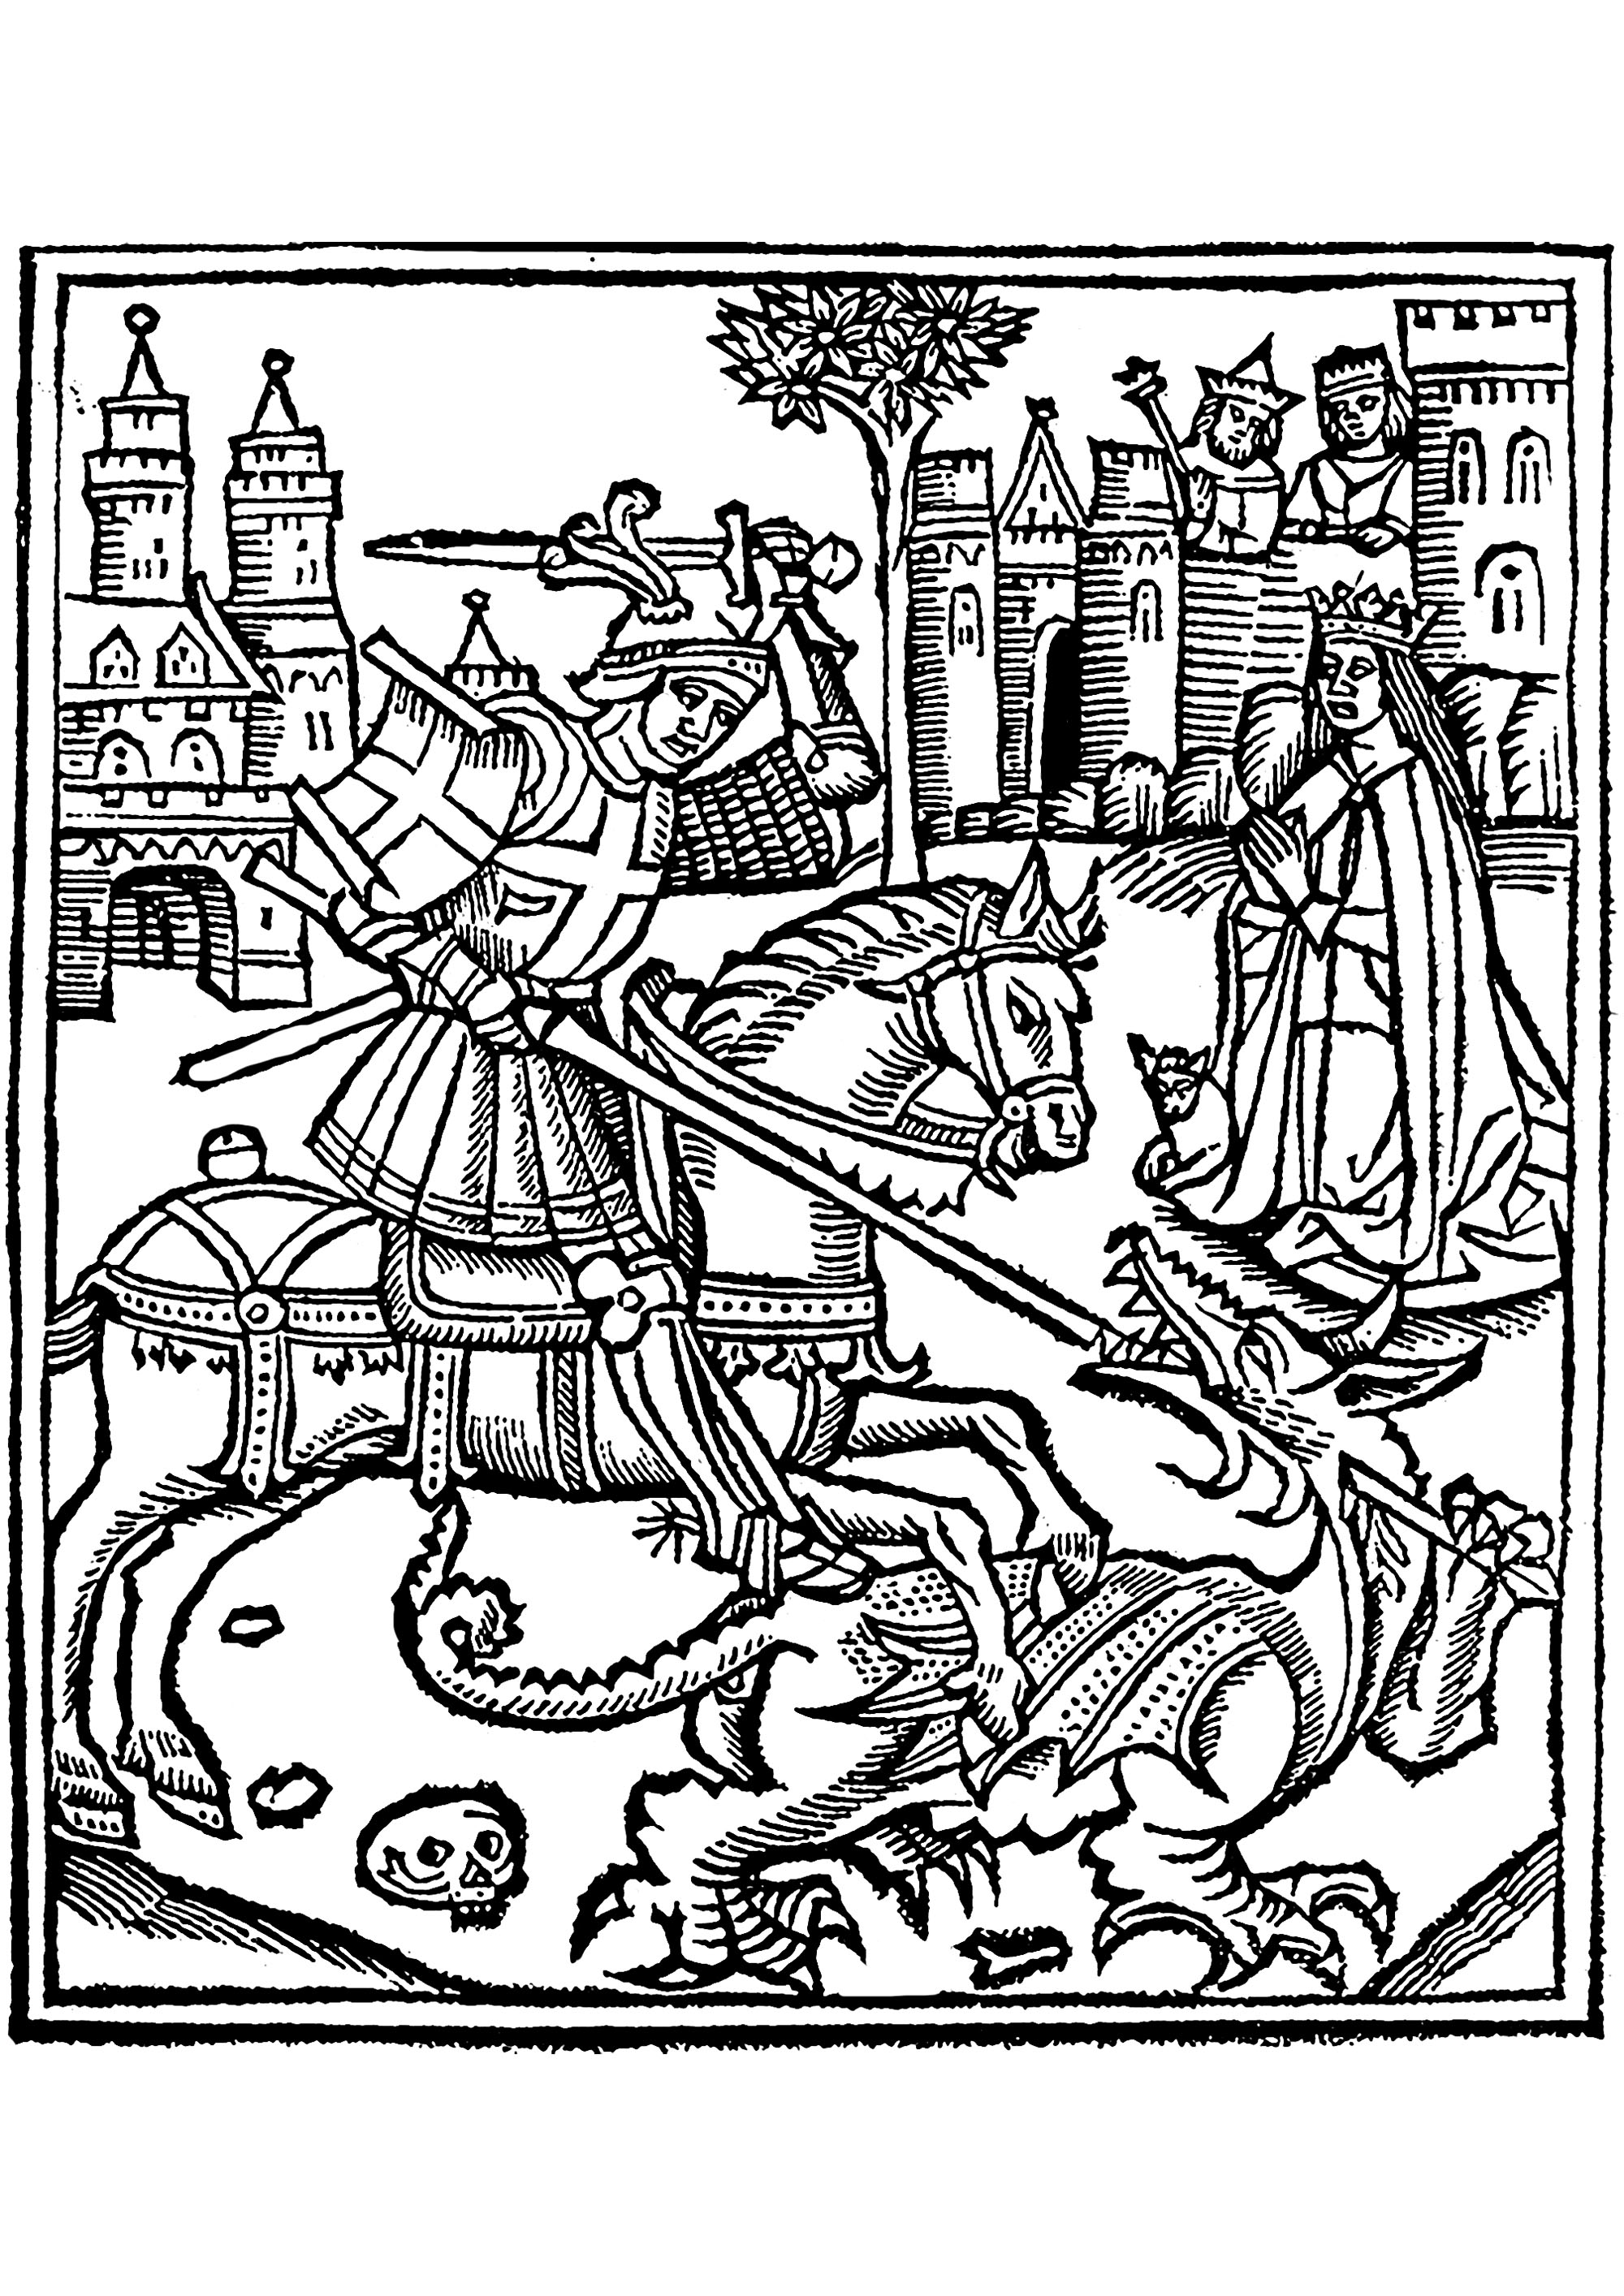 Página para colorear creada a partir de una xilografía que representa a San Jorge matando al dragón, de la Vida de San Jorge (1515).